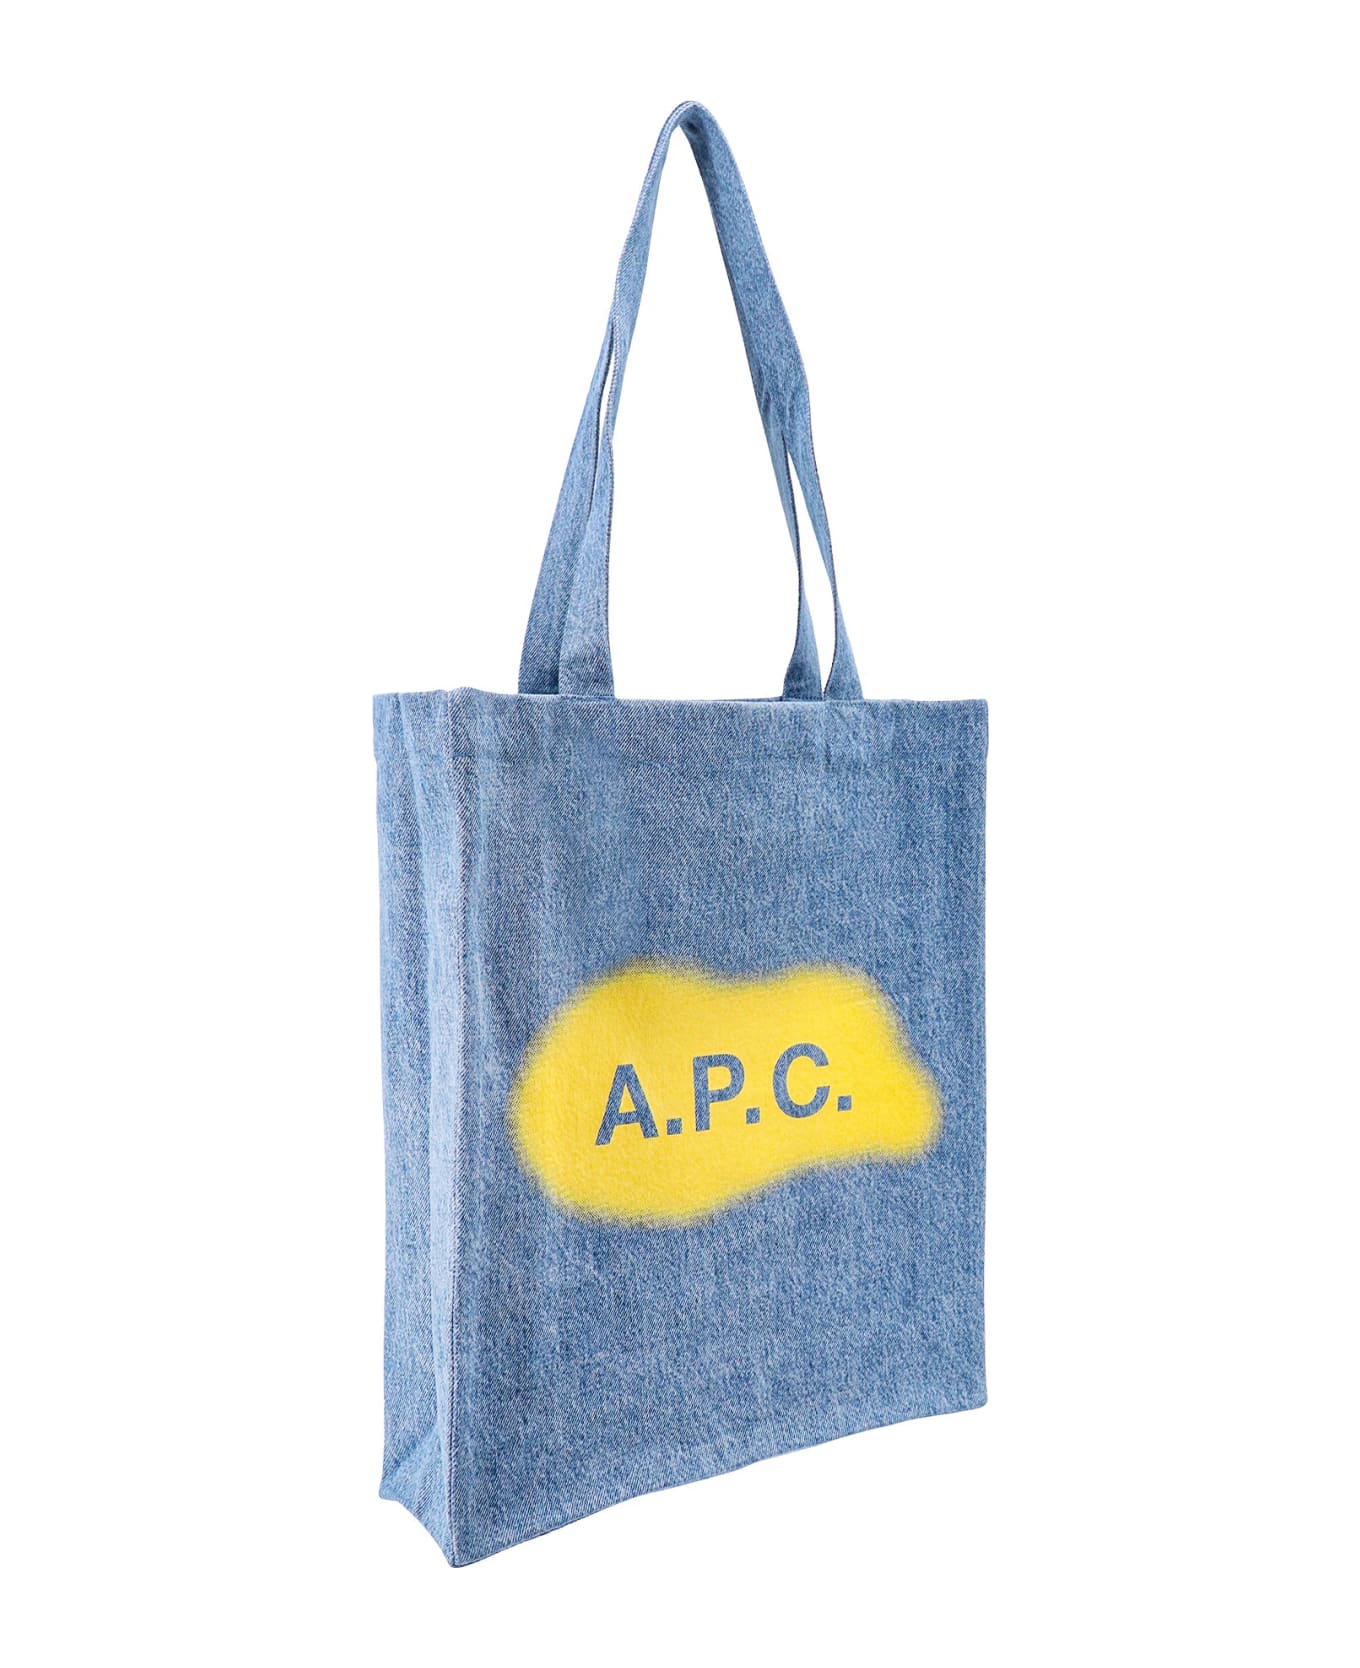 A.P.C. Shoulder Bag - Iab Bleu Clair トートバッグ